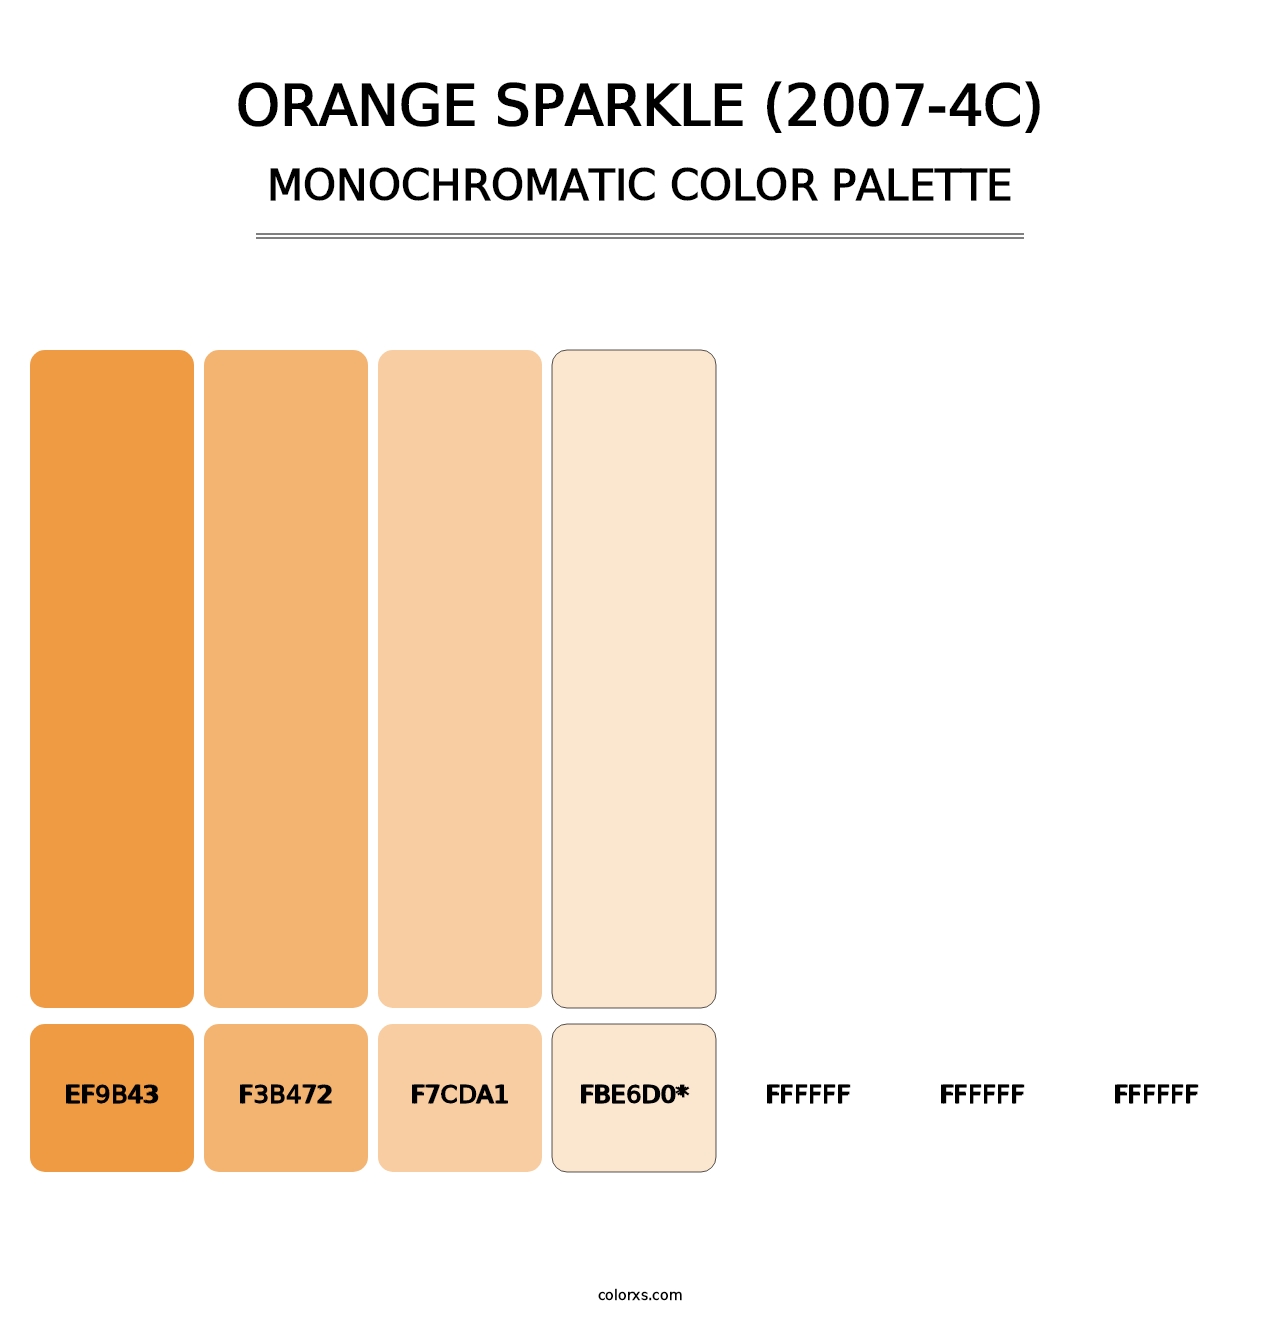 Orange Sparkle (2007-4C) - Monochromatic Color Palette